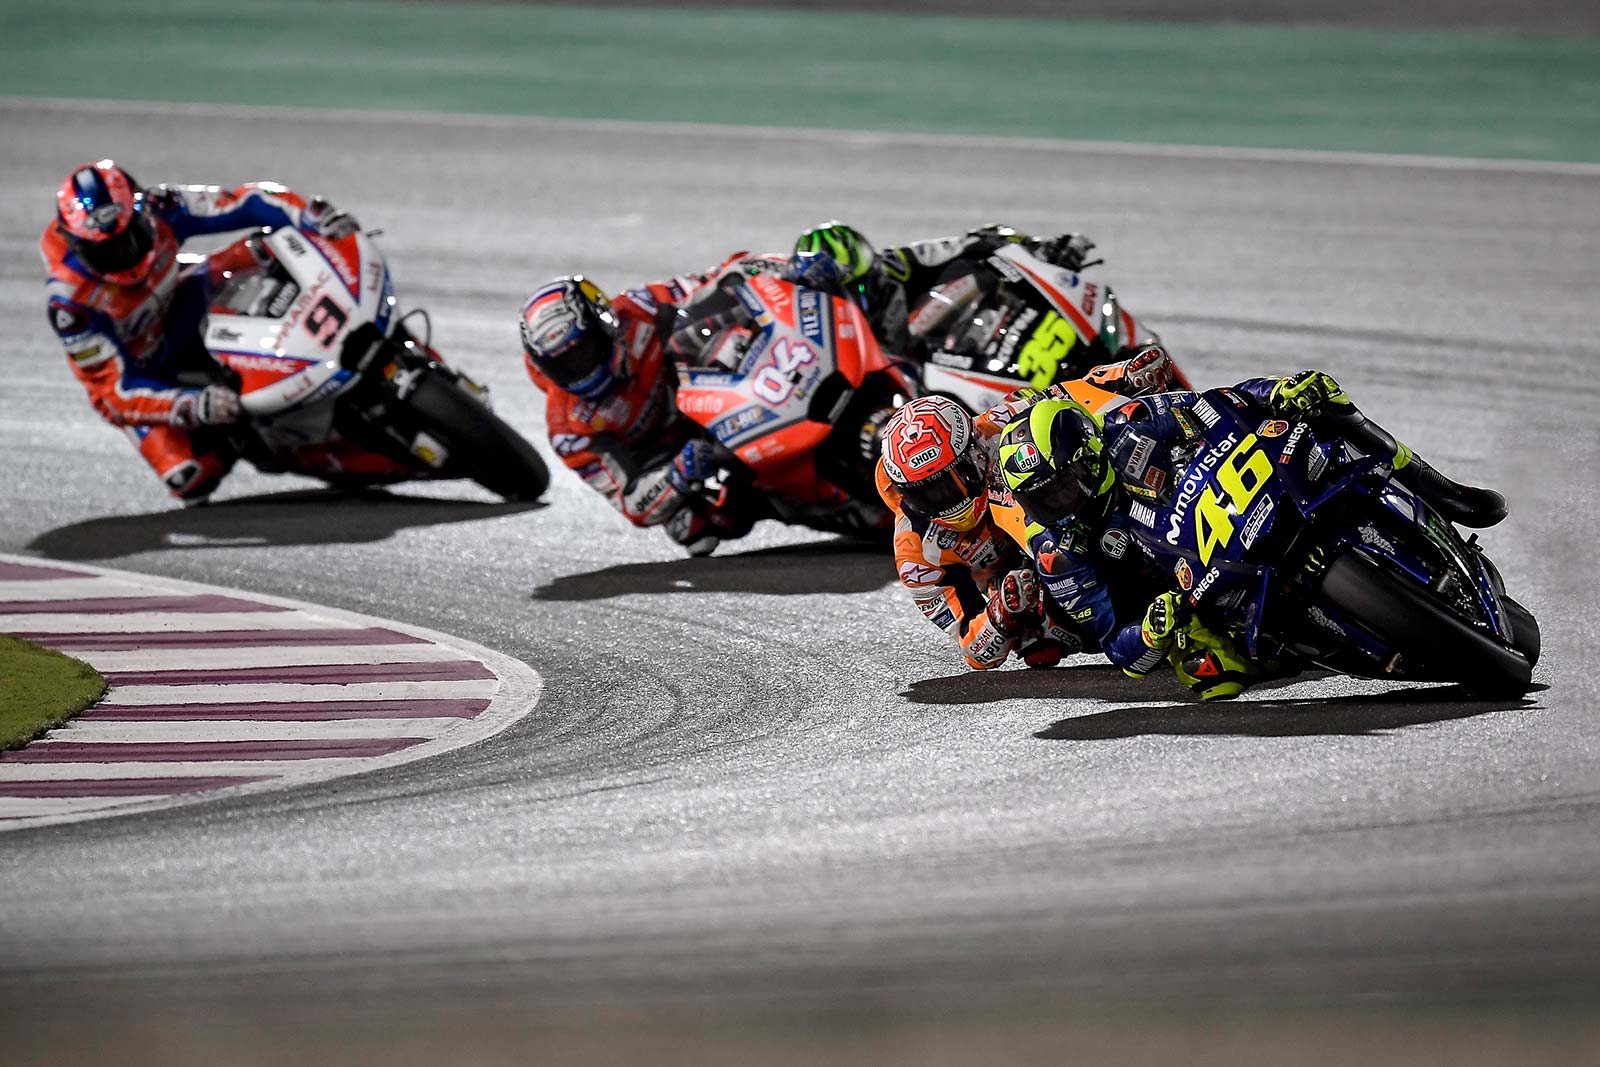 Mediaset emitirá dos carreras y resúmenes del Mundial de MotoGP 2019